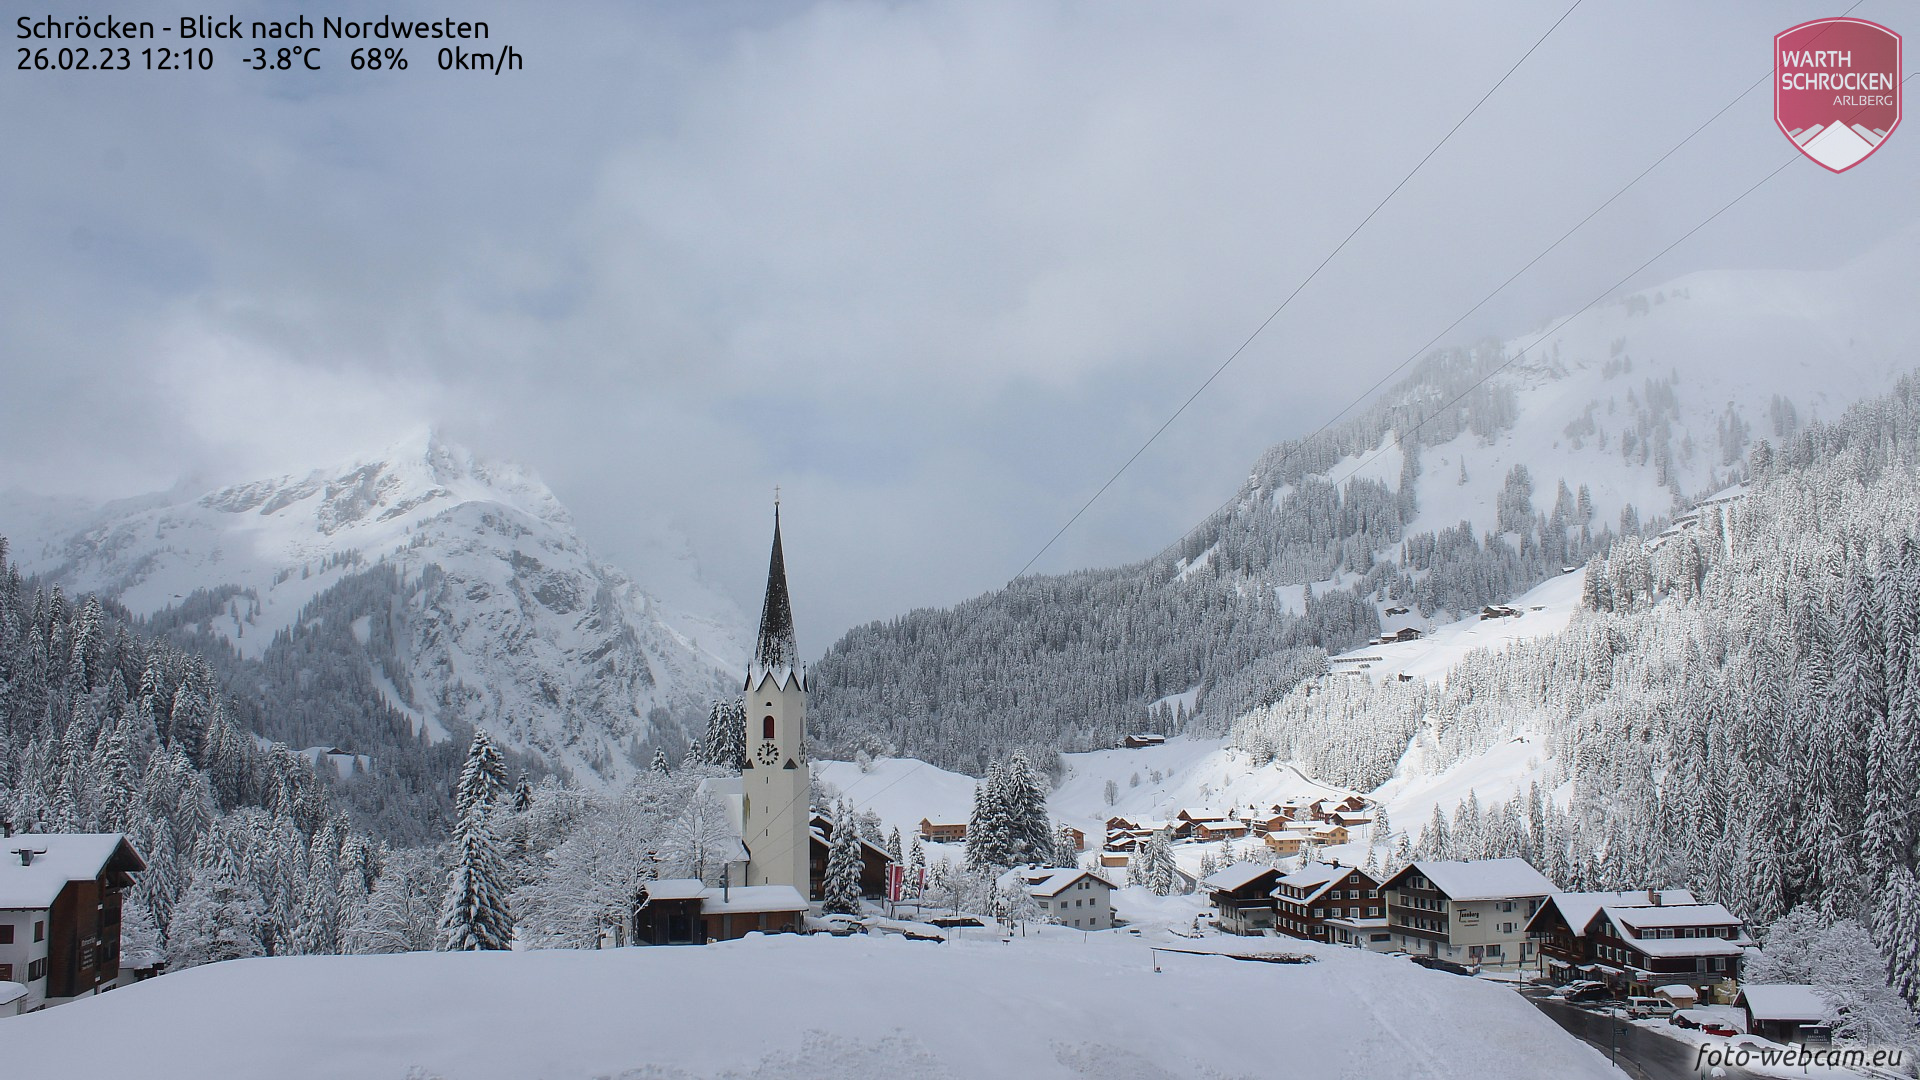 Alpen | Na sneeuwval en flinke temperatuurdaling, volgt veel zon deze week! 